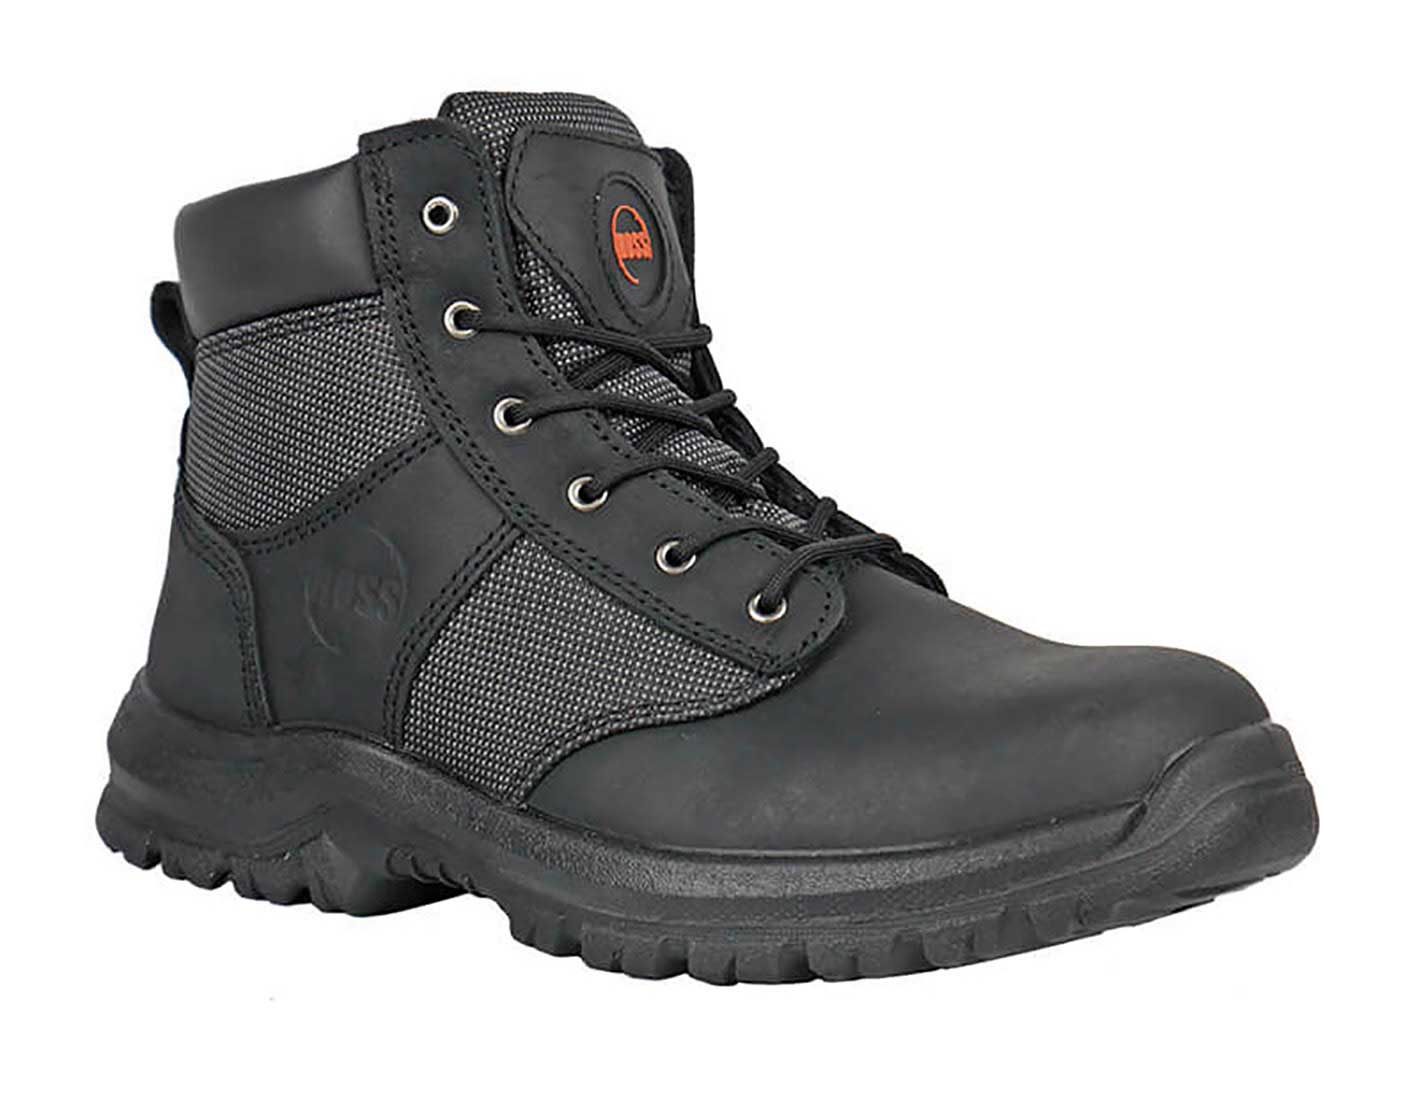 Hoss Boots 60160 Carter Men's 6 Work Boot - Steel Toe Slip Resistant - Extra Depth - Extra Wide